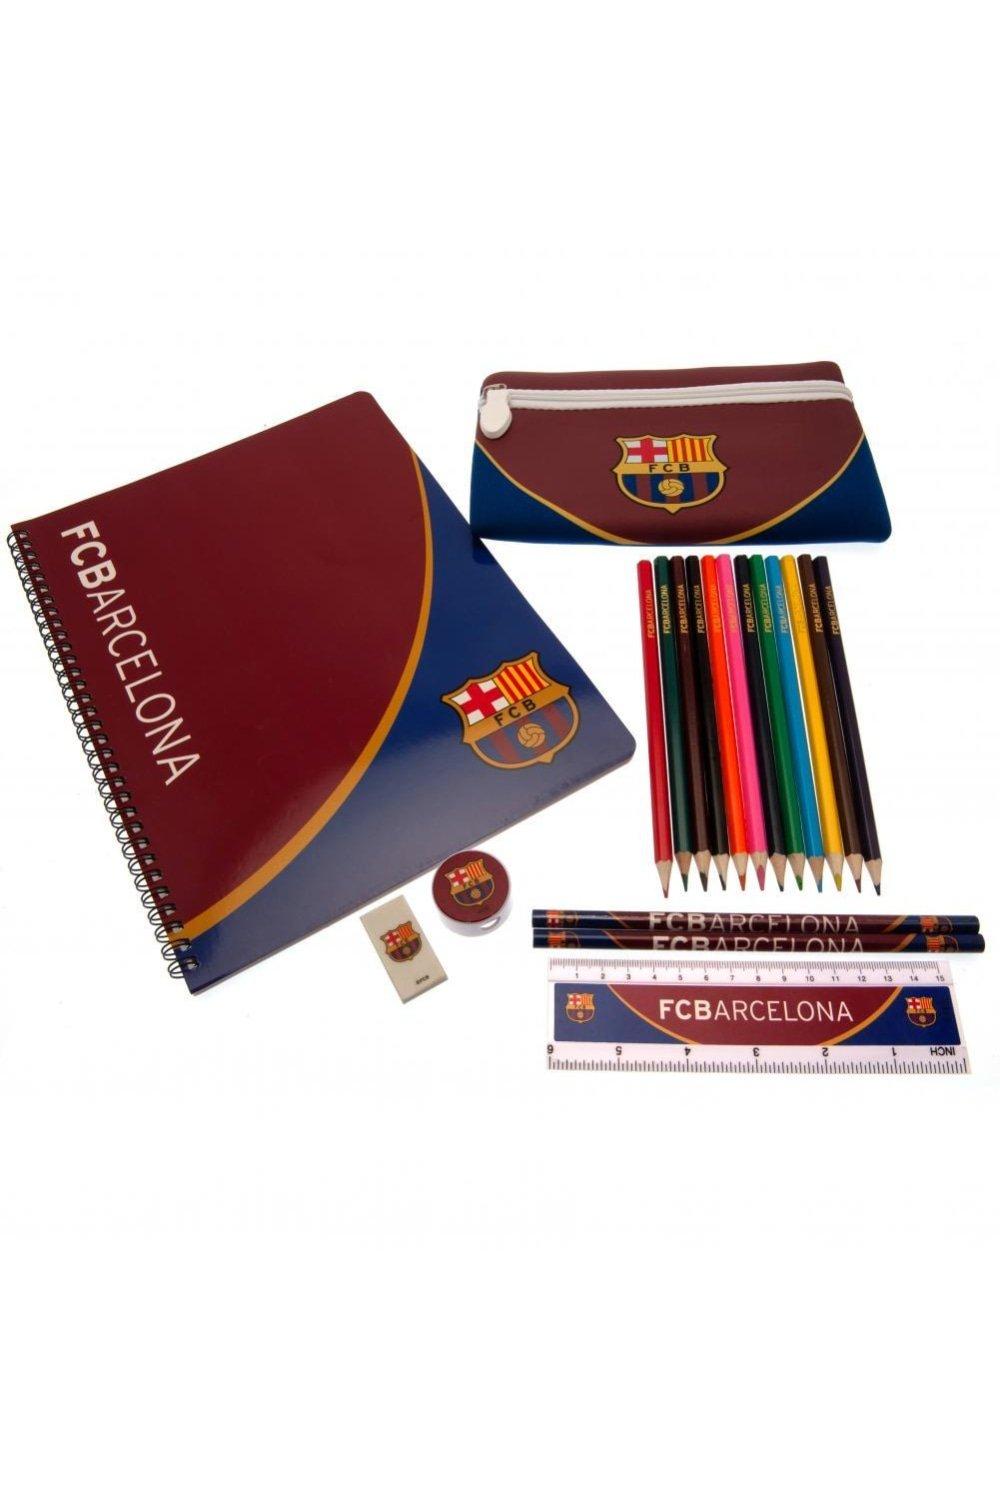 Набор школьных принадлежностей FC Barcelona, красный цветные карандаши замок в карт промоупаковке 24 шт 3 двухцветных карандаша точилка